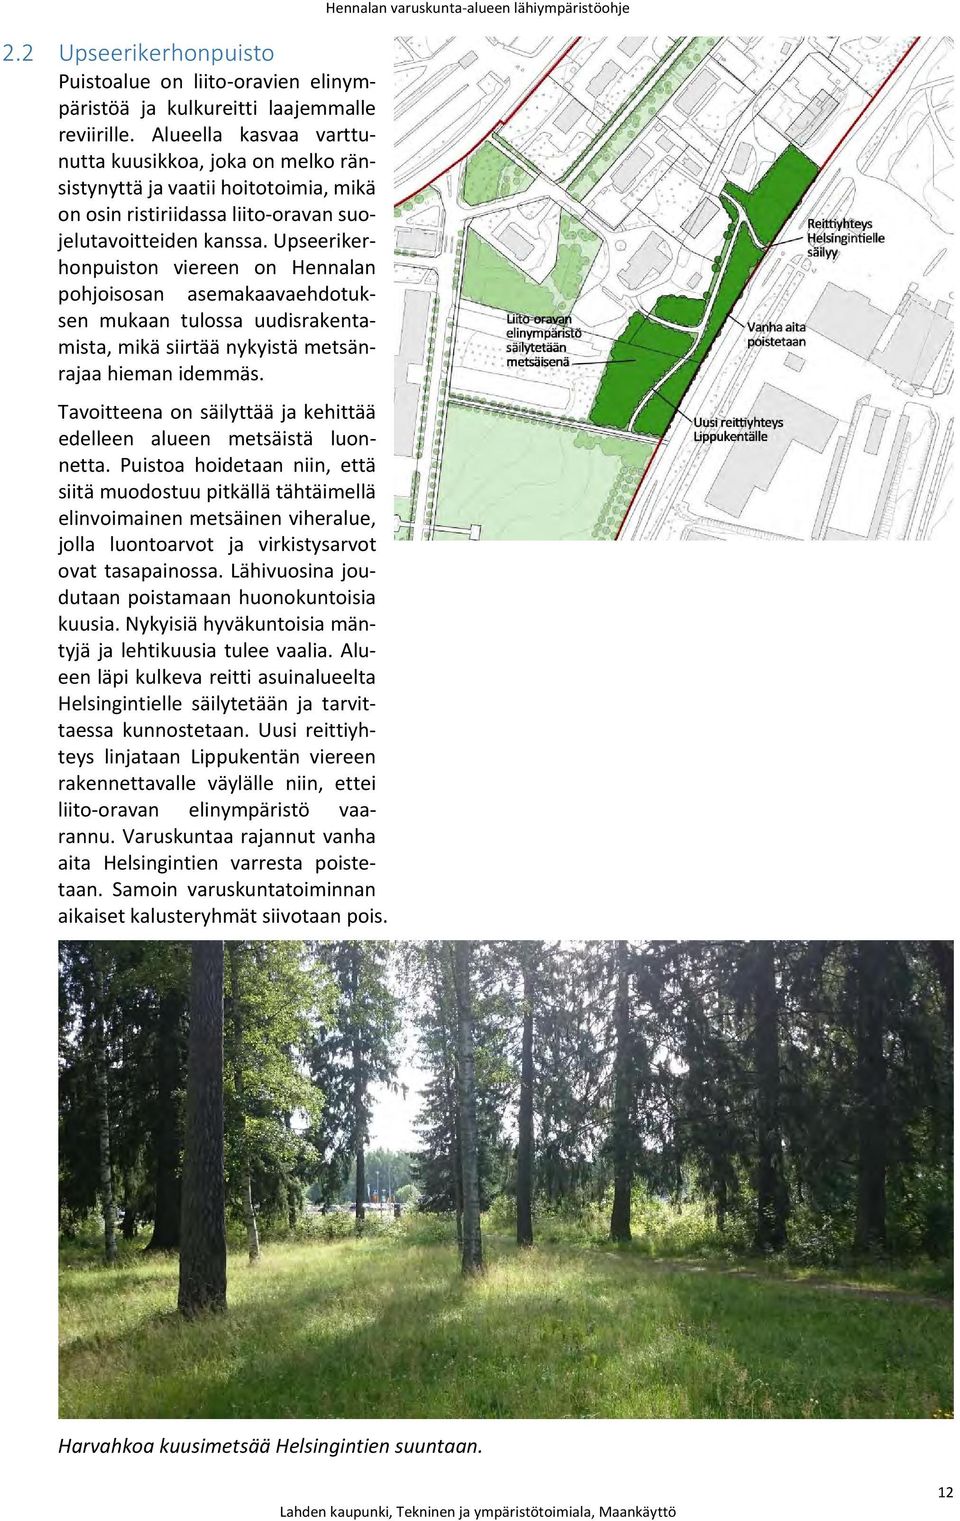 Upseerikerhonpuiston viereen on Hennalan pohjoisosan asemakaavaehdotuksen mukaan tulossa uudisrakentamista, mikä siirtää nykyistä metsänrajaa hieman idemmäs.